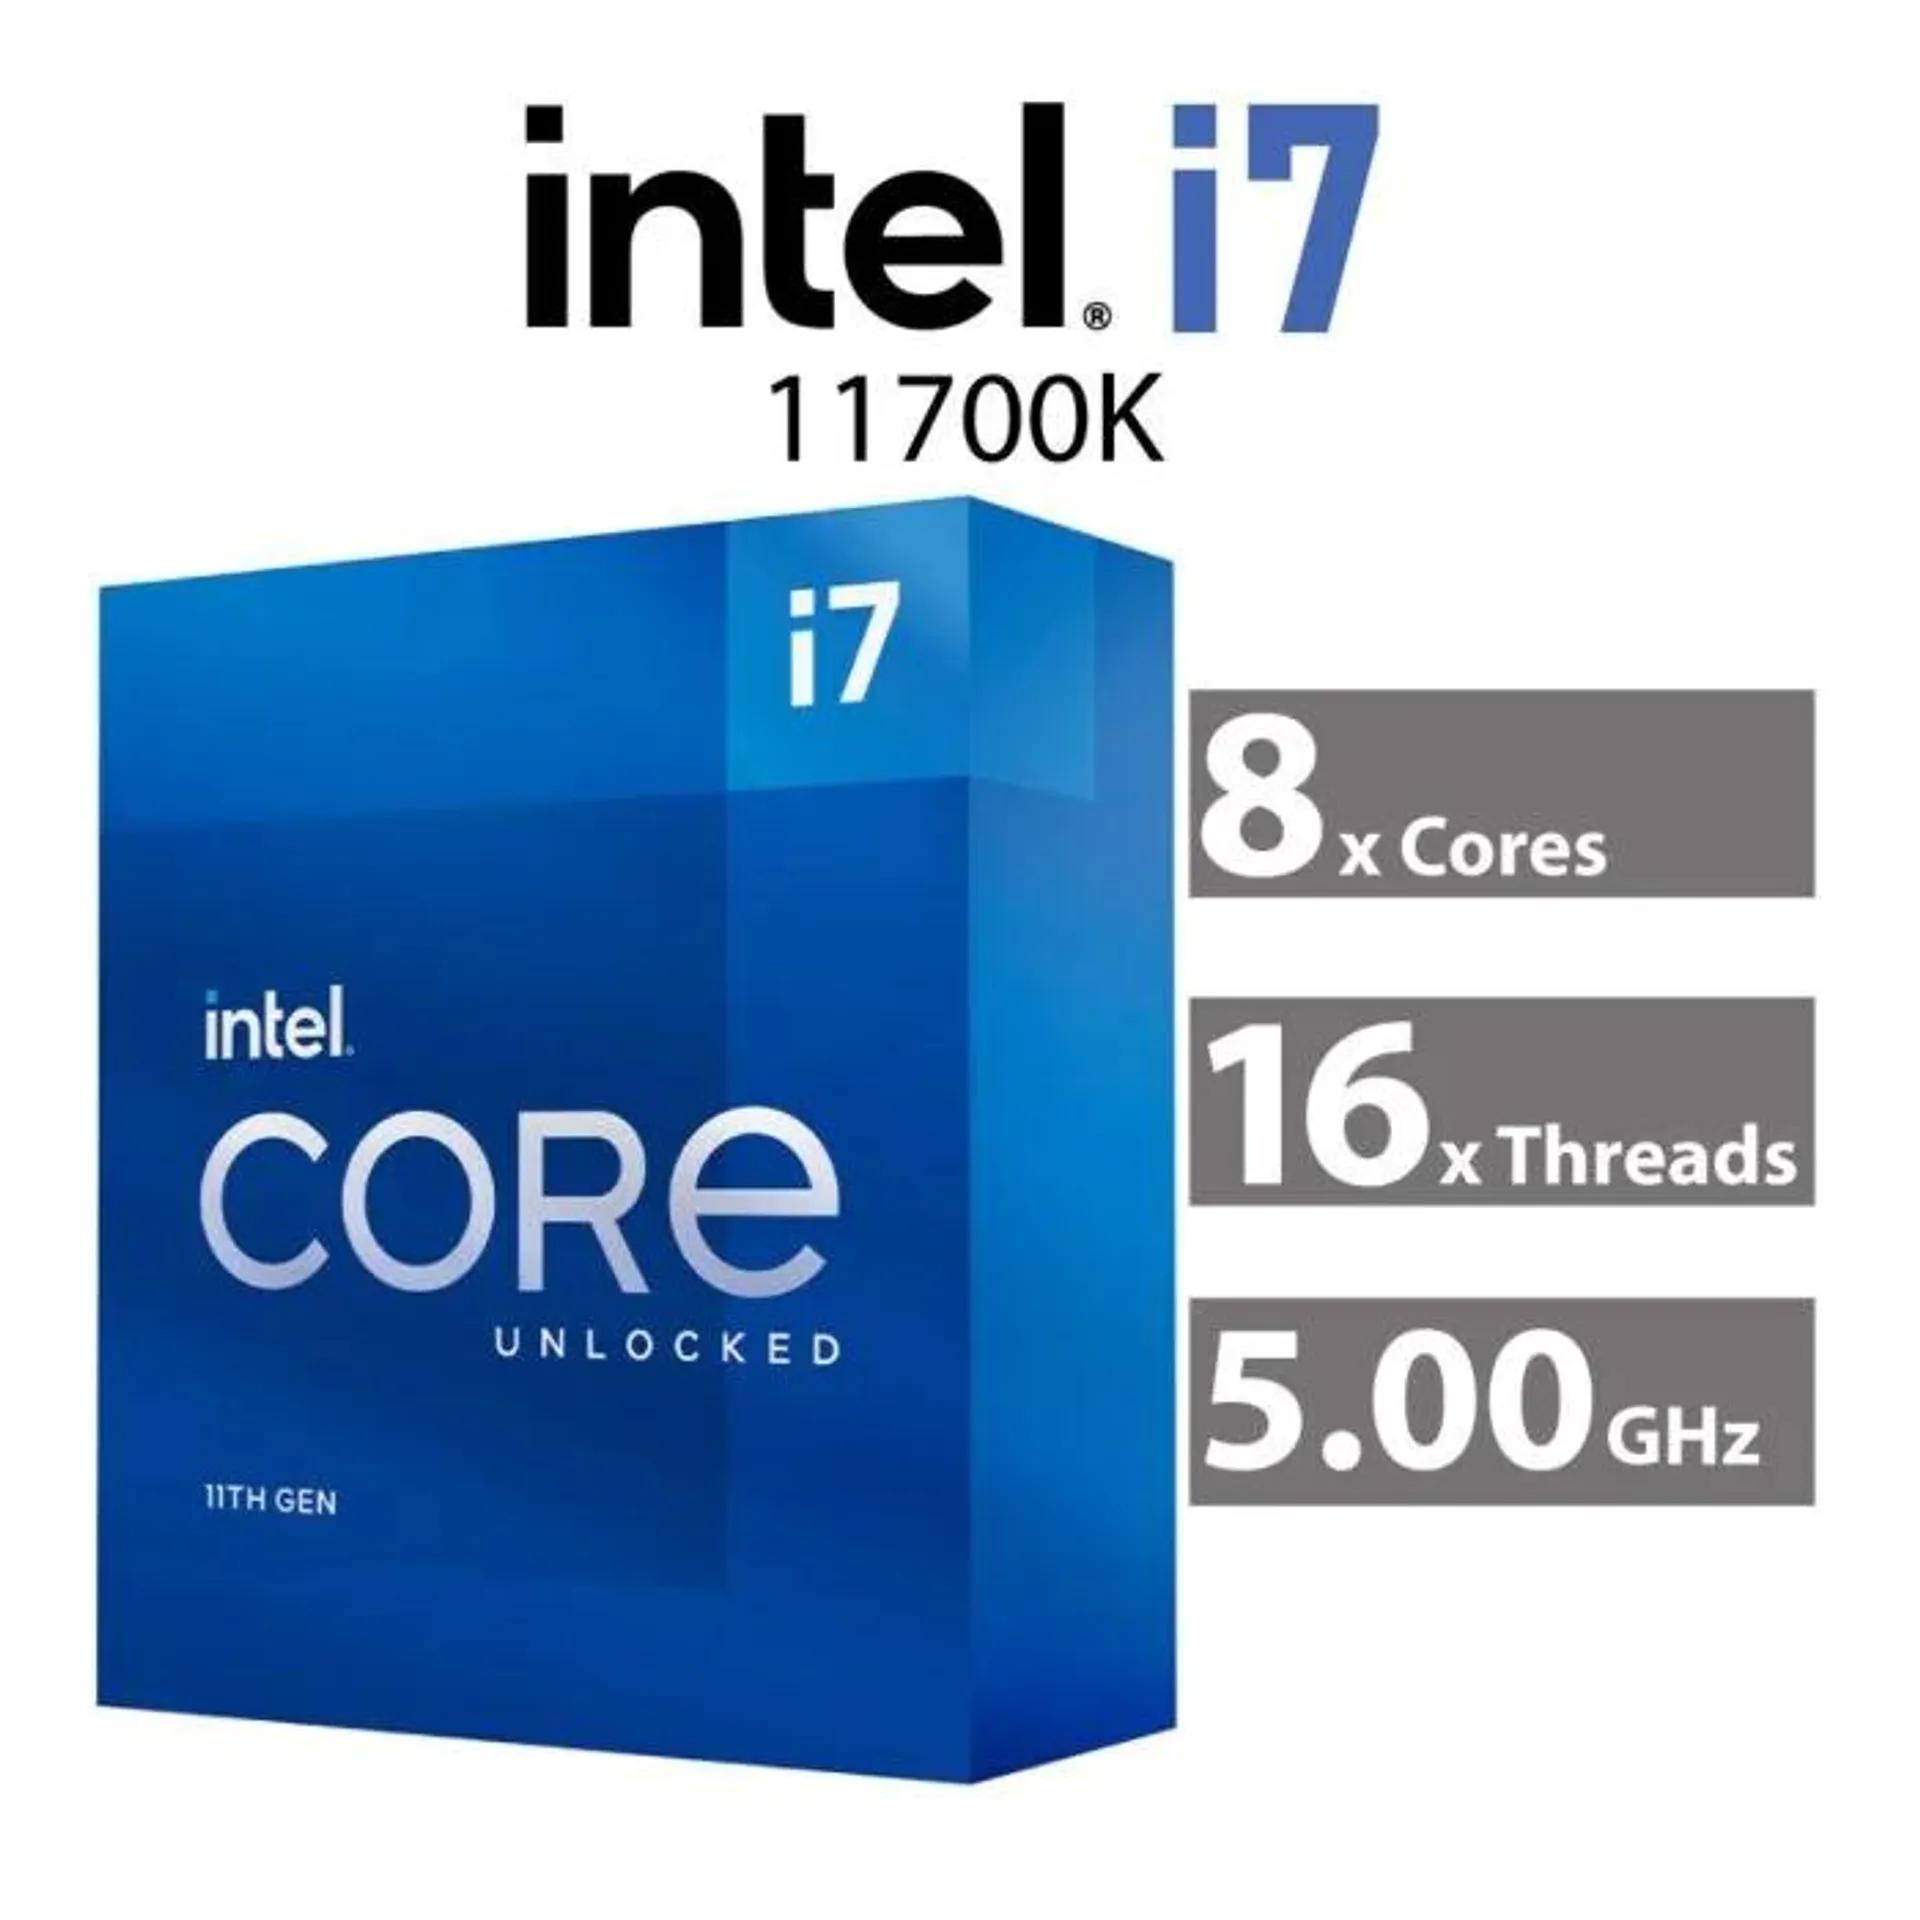 Intel Core i7-11700K Rocket Lake 8-Core 3.60GHz LGA1200 125W BX8070811700K Desktop Processor